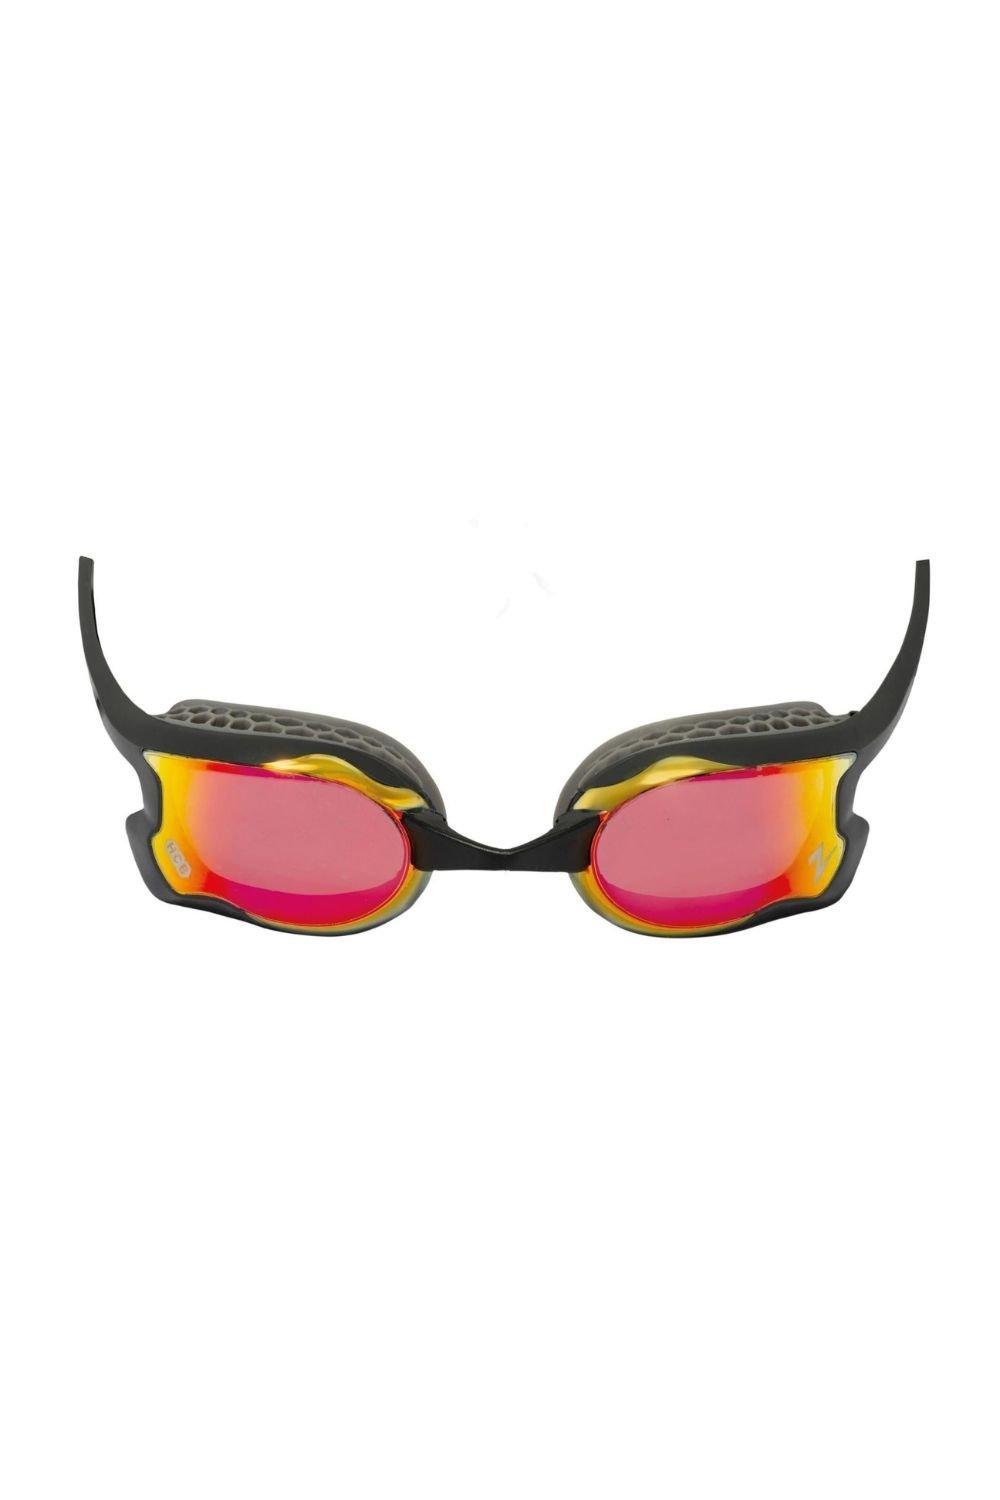 Очки для плавания с зеркалом Raptor HCB Zoggs, красный очки для плавания orca killa 180° goggle черные